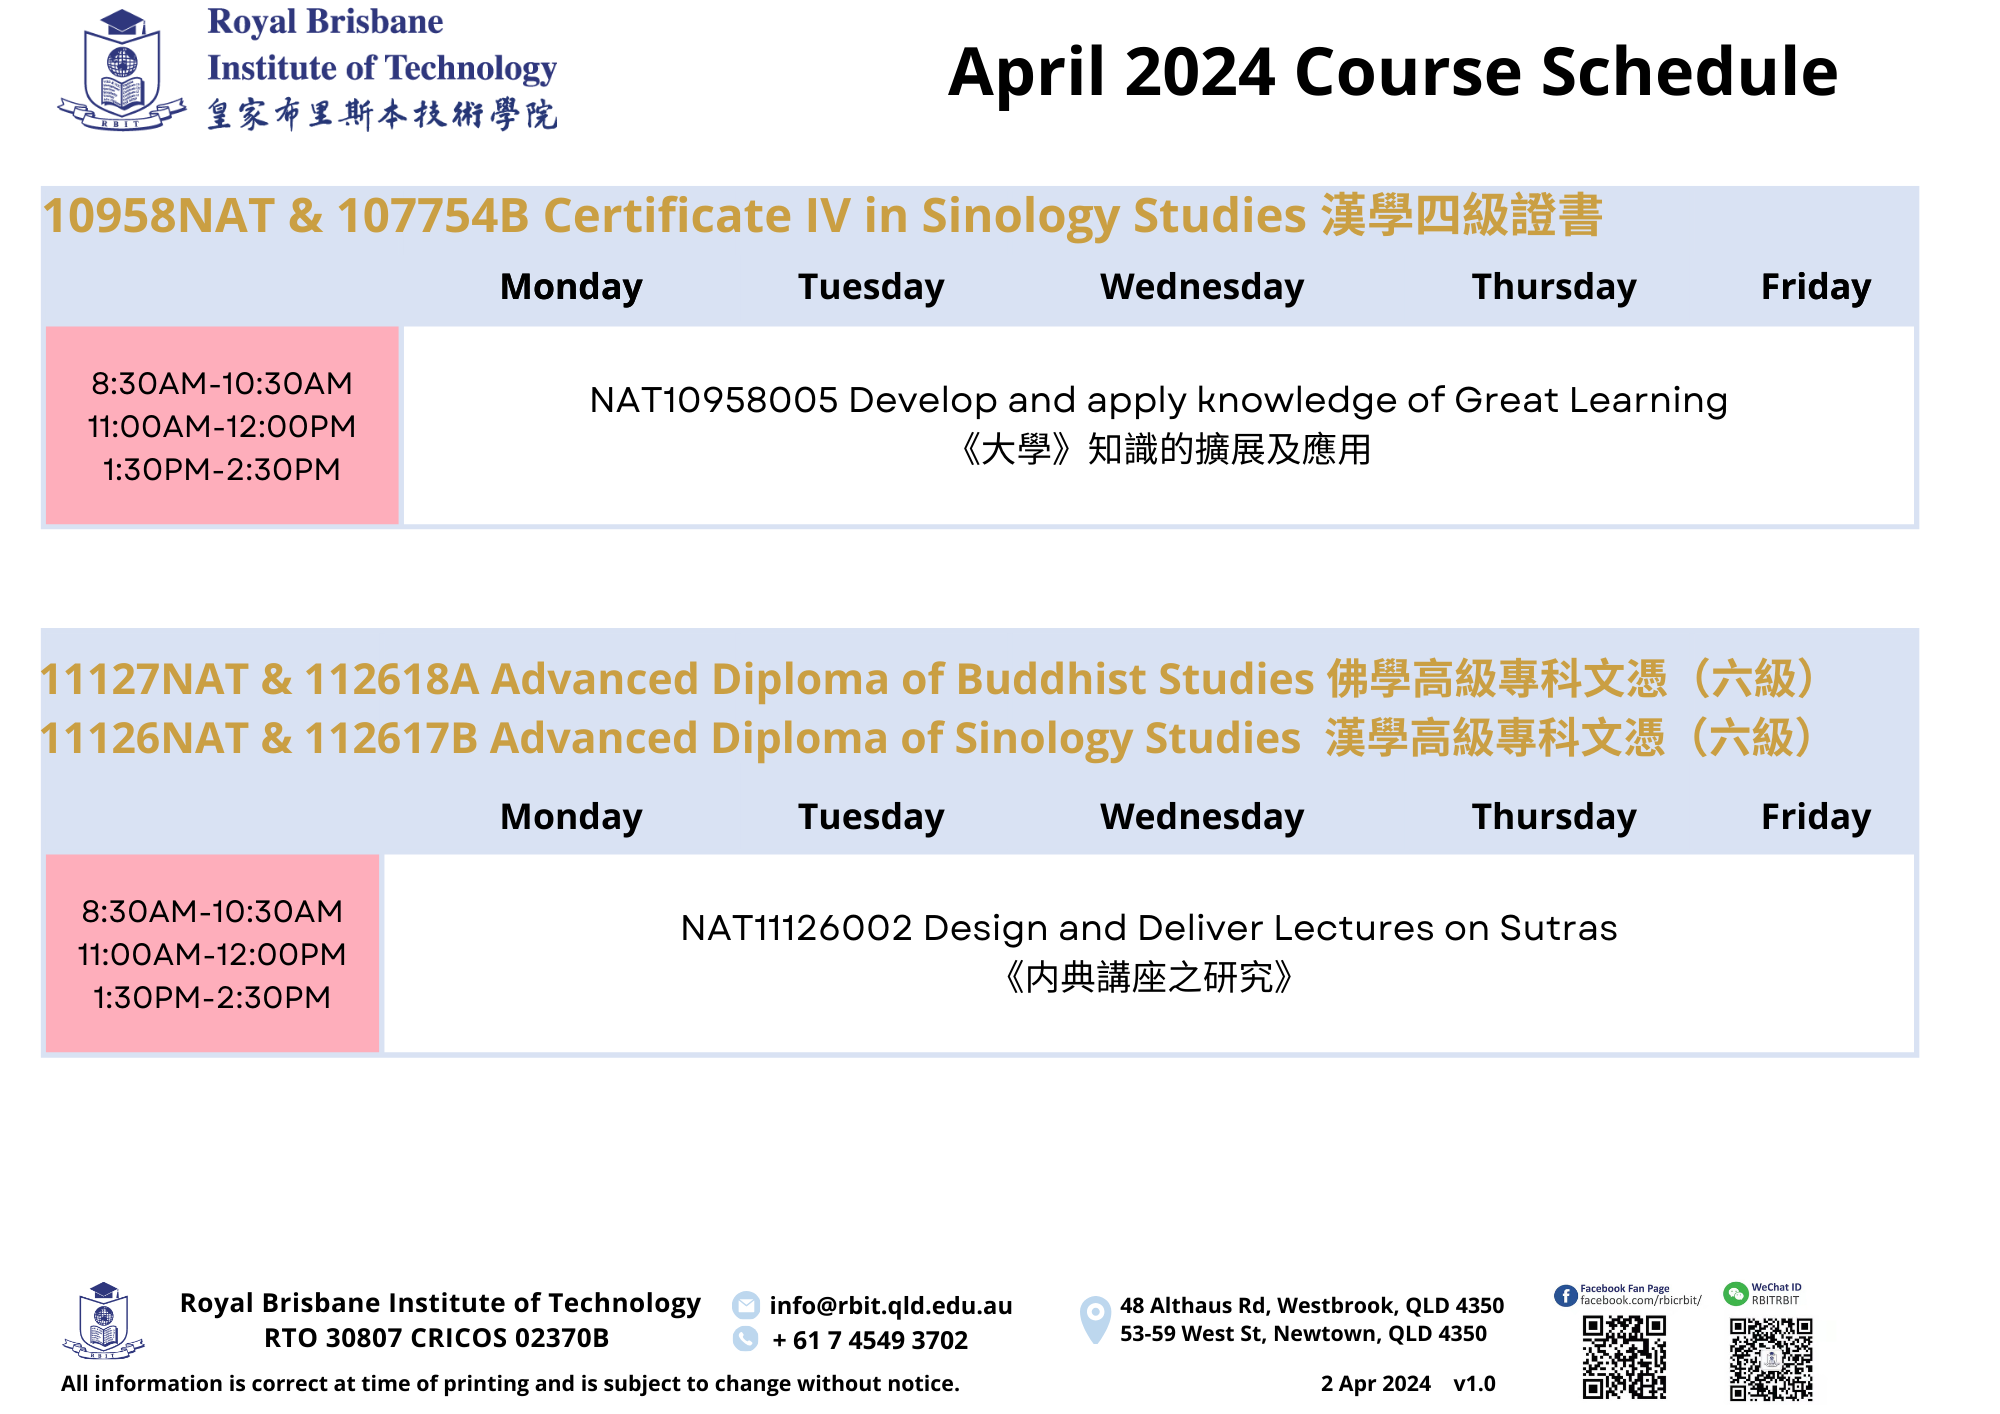 AL0_202404 Course Schedule_v1.0